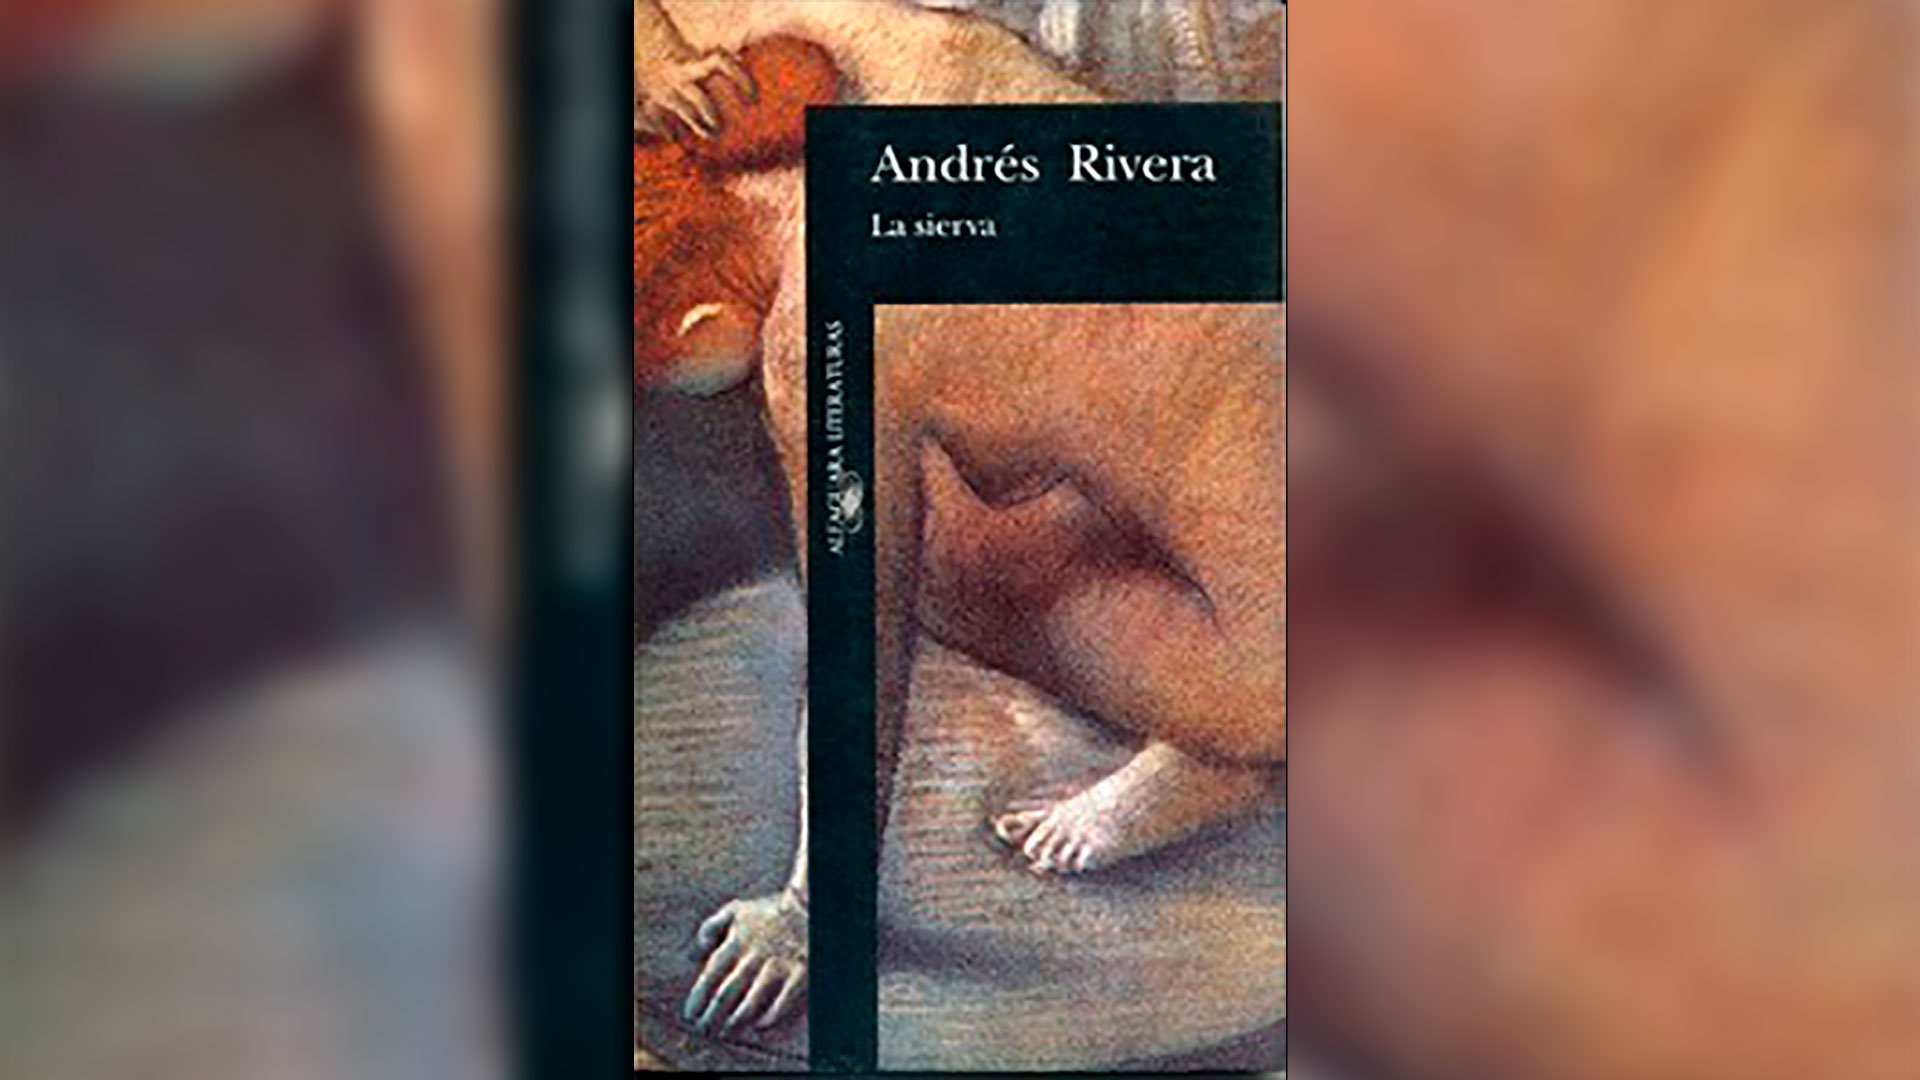 "La sierva", uno de los textos más fascinantes de la literatura argentina contemporánea.